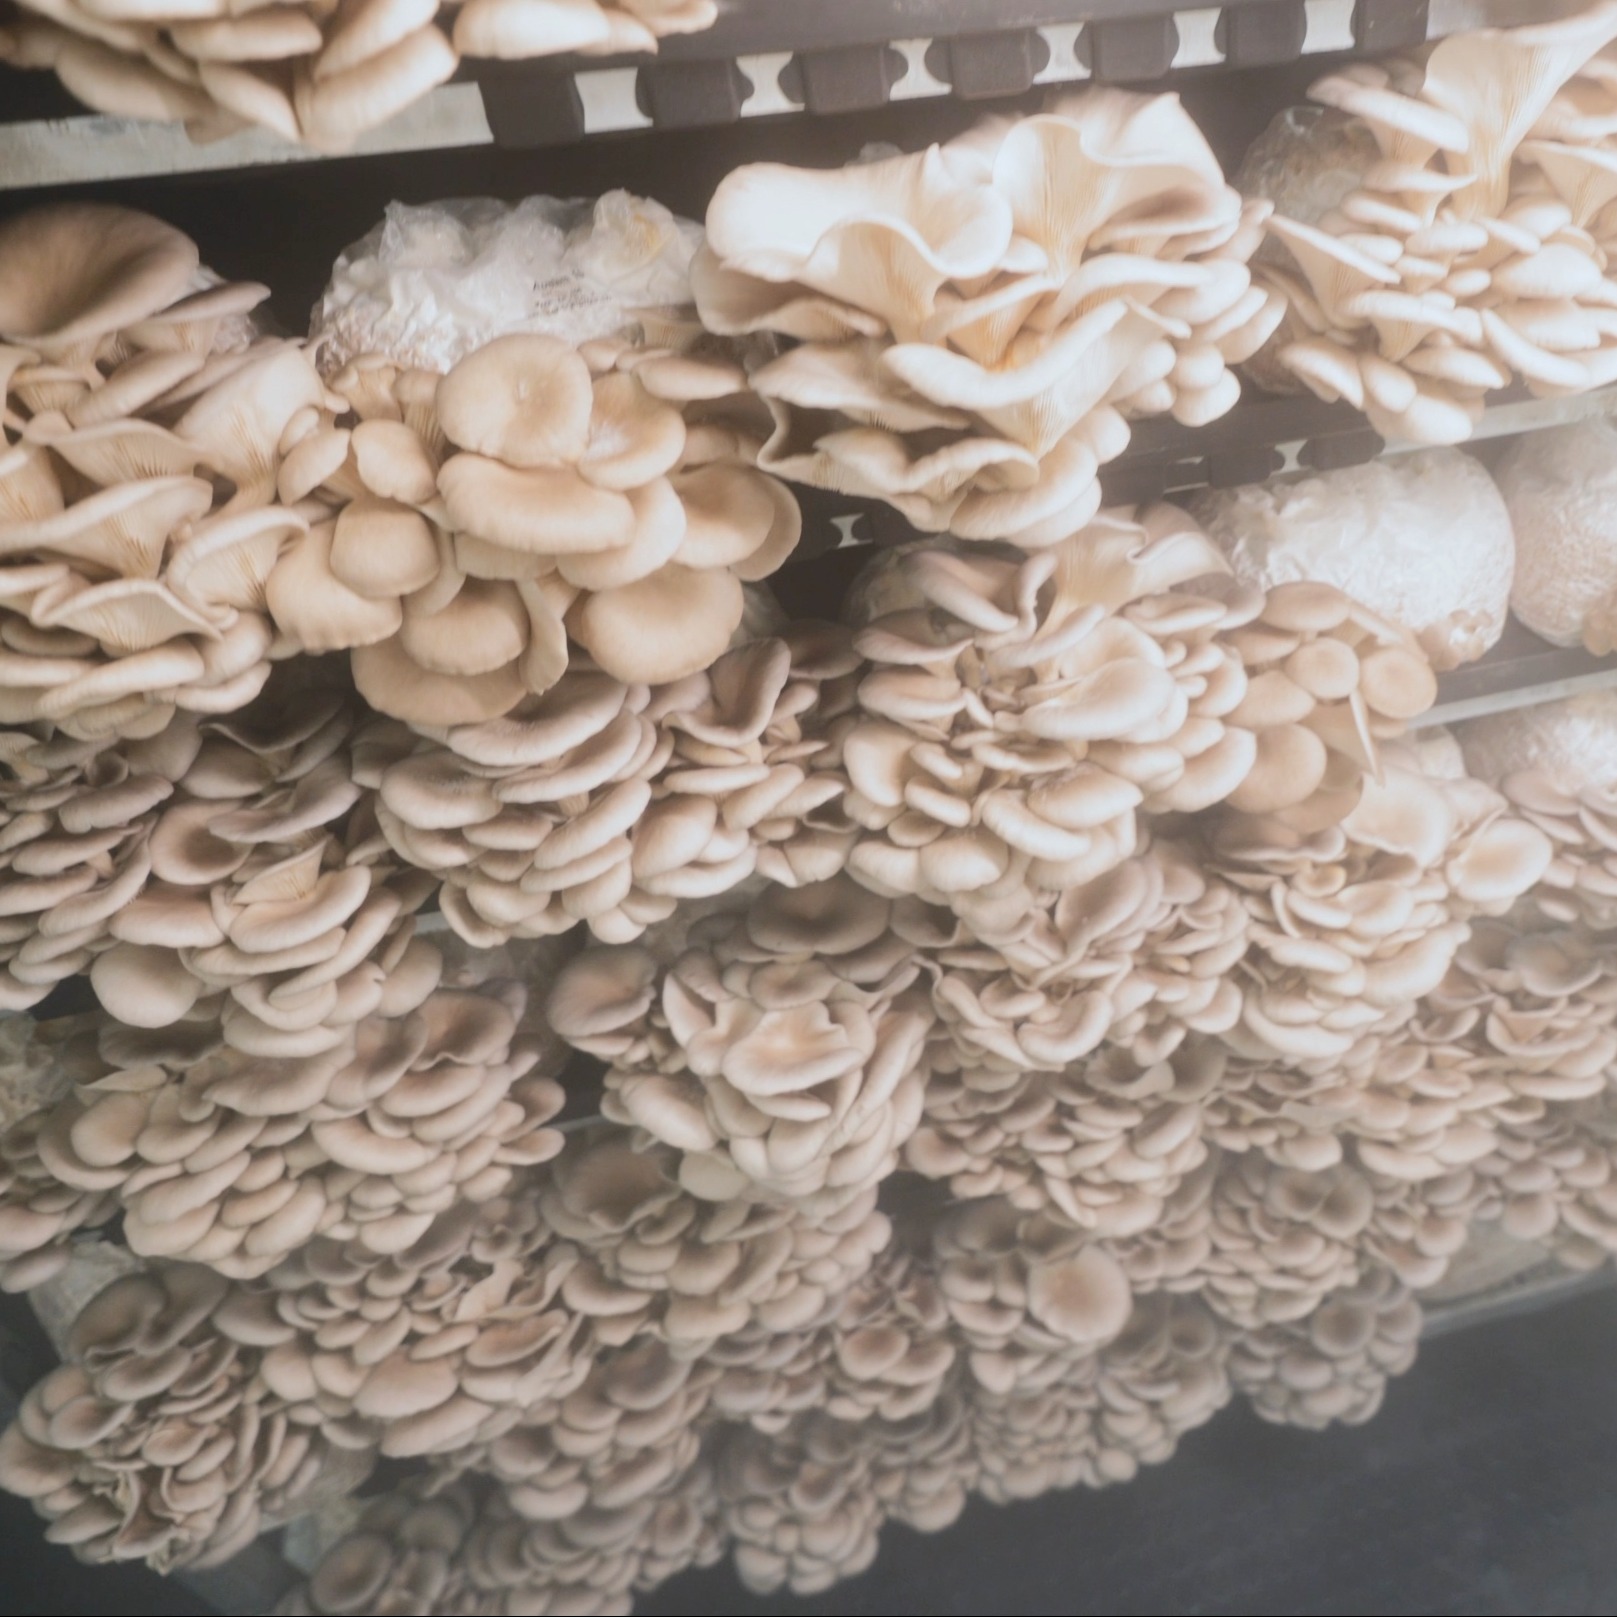 Anbauweise der Pilze bei Tupu in mehreren Lagen übereinander.